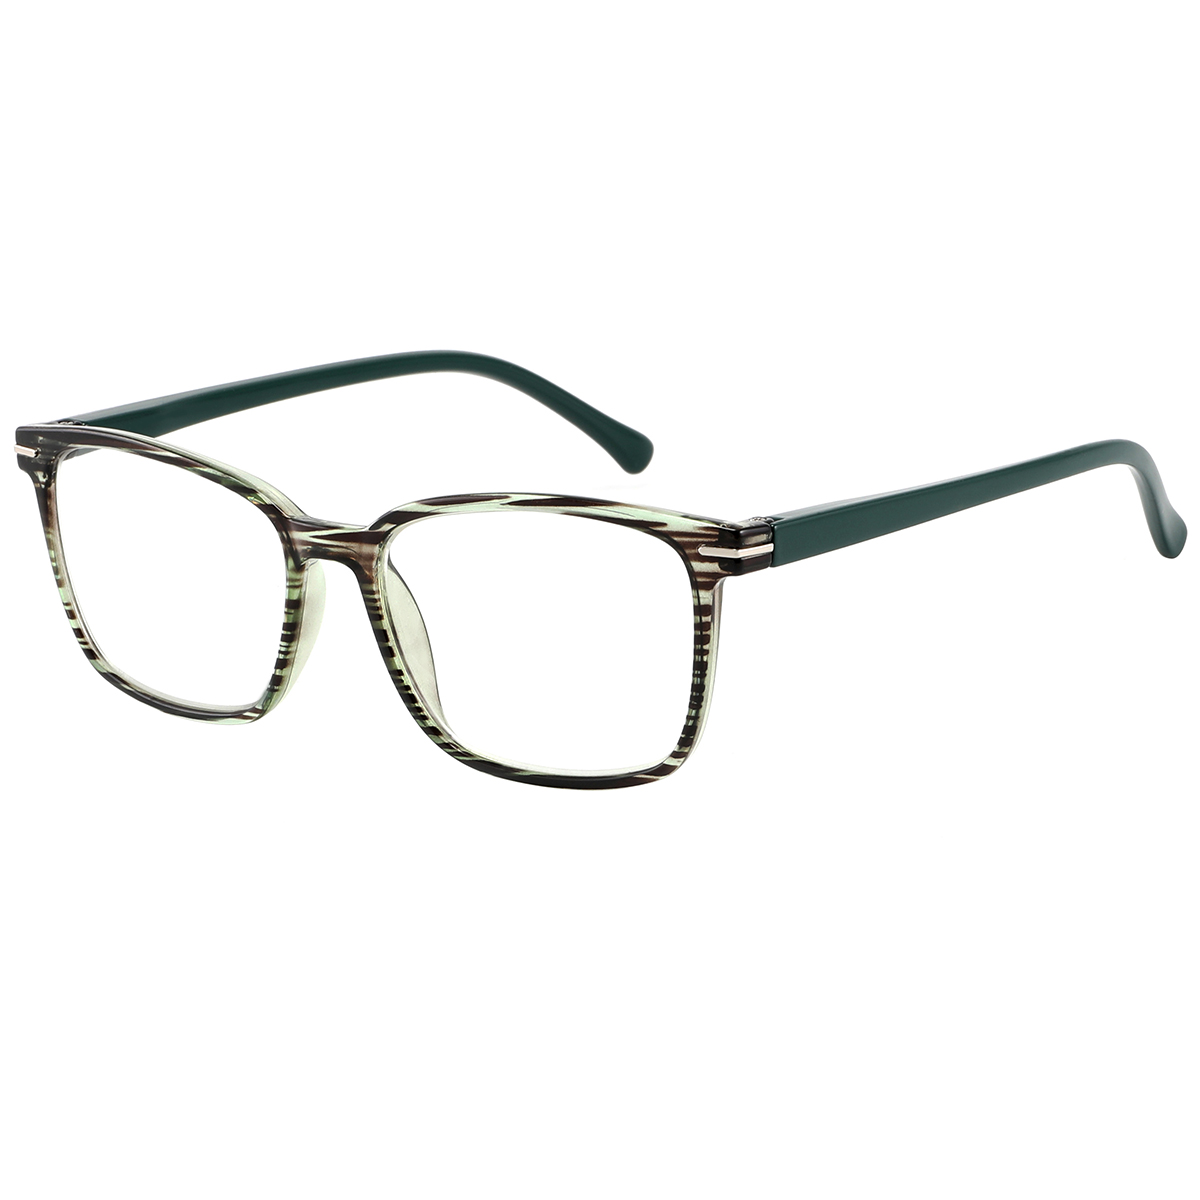 Getae - Square Green Reading Glasses for Men & Women